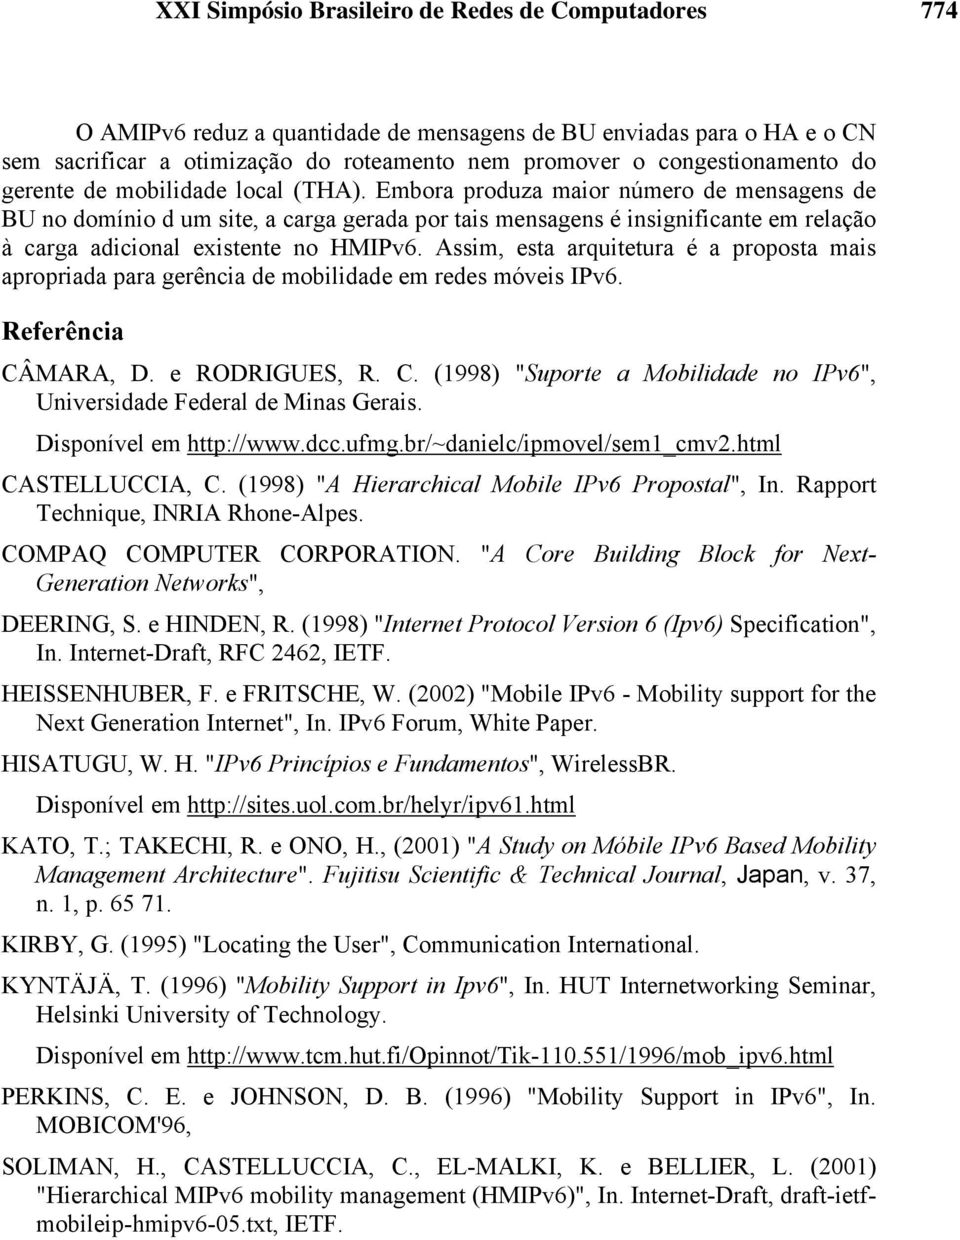 Assim, esta arquitetura é a proposta mais apropriada para gerência de mobilidade em redes móveis IPv6. Referência CÂMARA, D. e RODRIGUES, R. C. (1998) "Suporte a Mobilidade no IPv6", Universidade Federal de Minas Gerais.